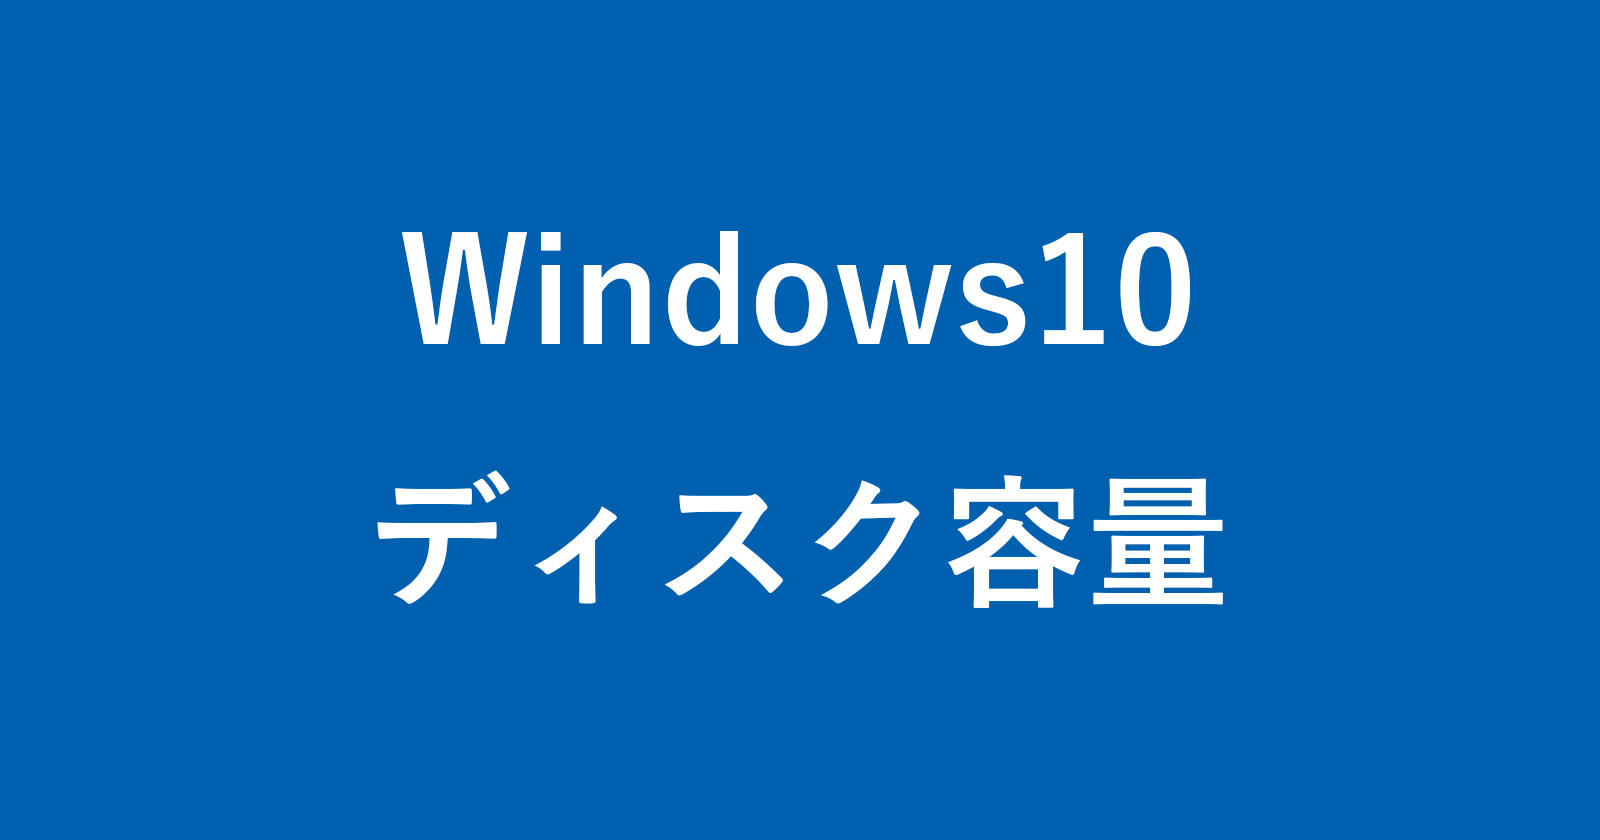 windows 10 disk storage